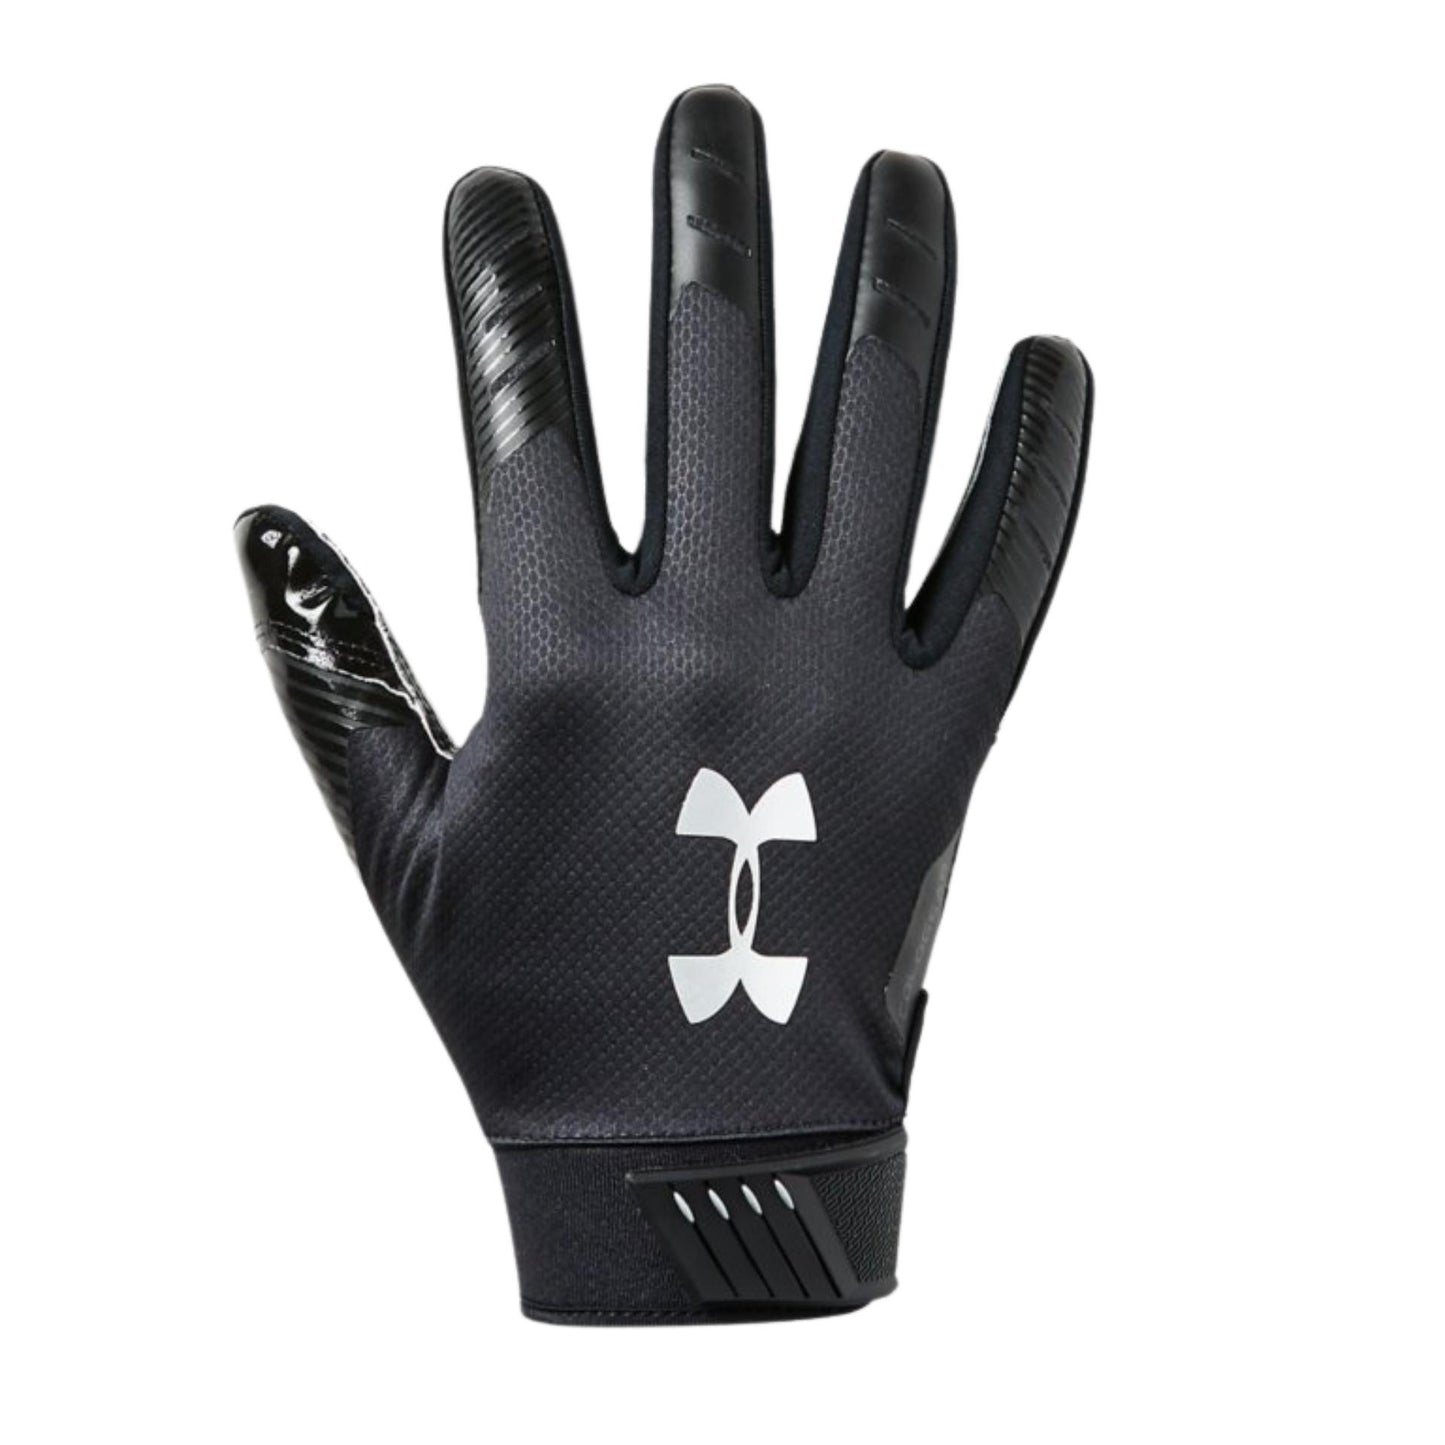 Under Armour Men's UA Spotlight ColdGear Football Gloves